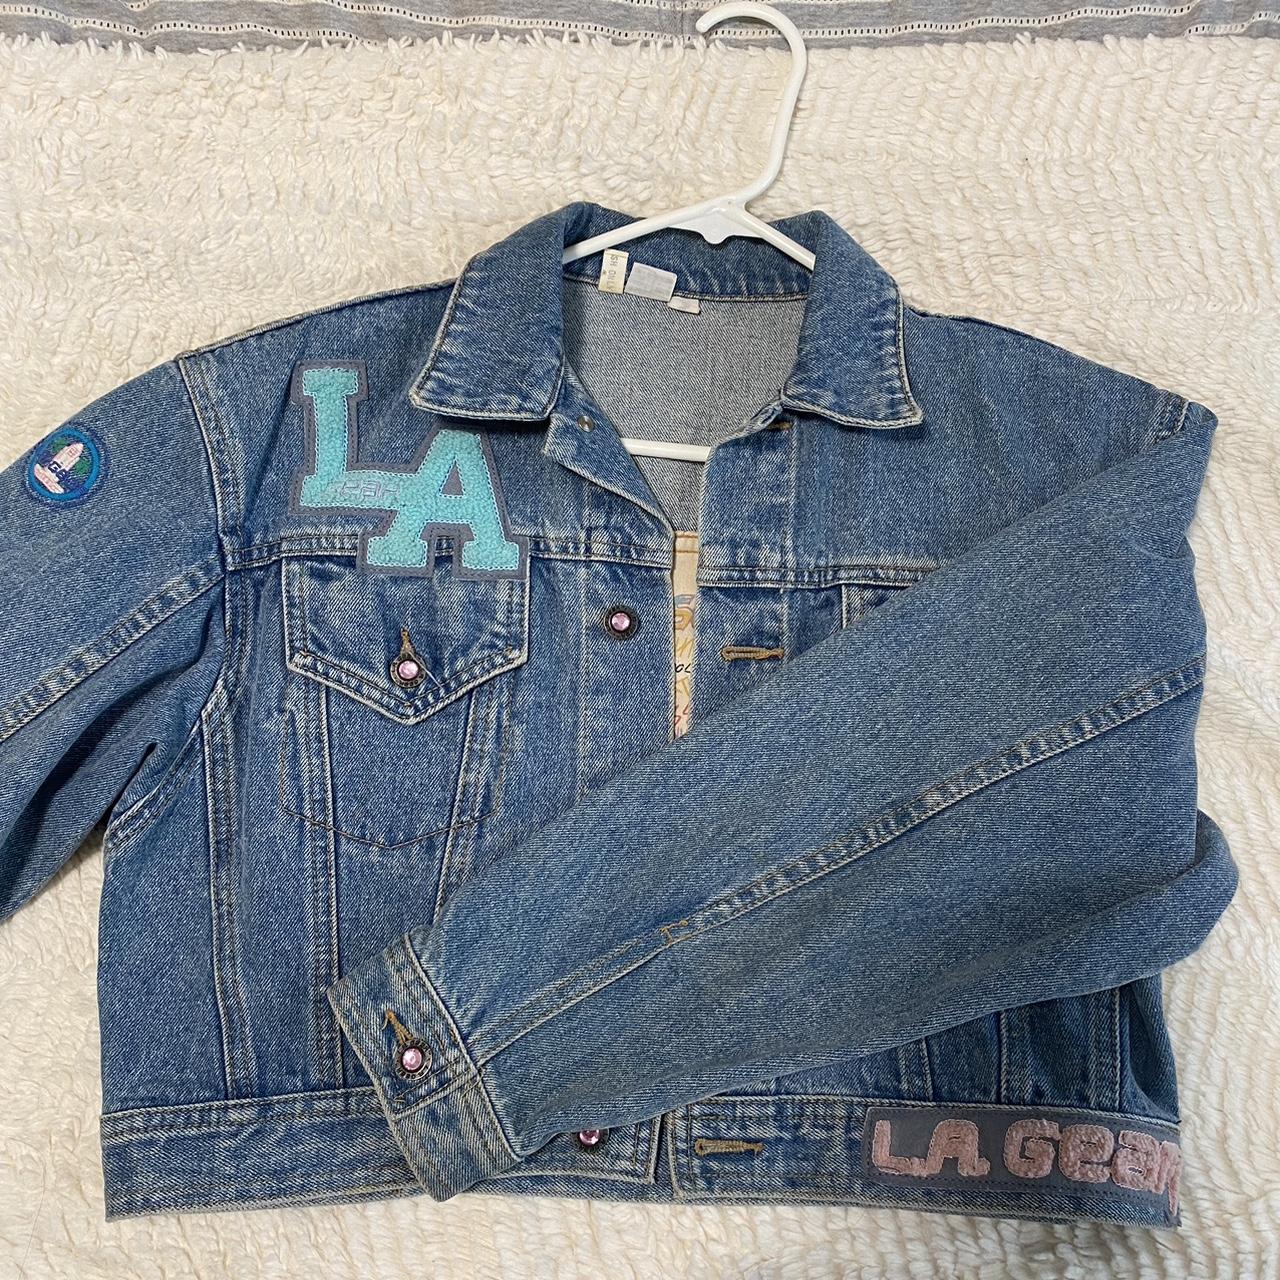 Vintage LA GEAR Cropped Jean Jacket - size small -... - Depop